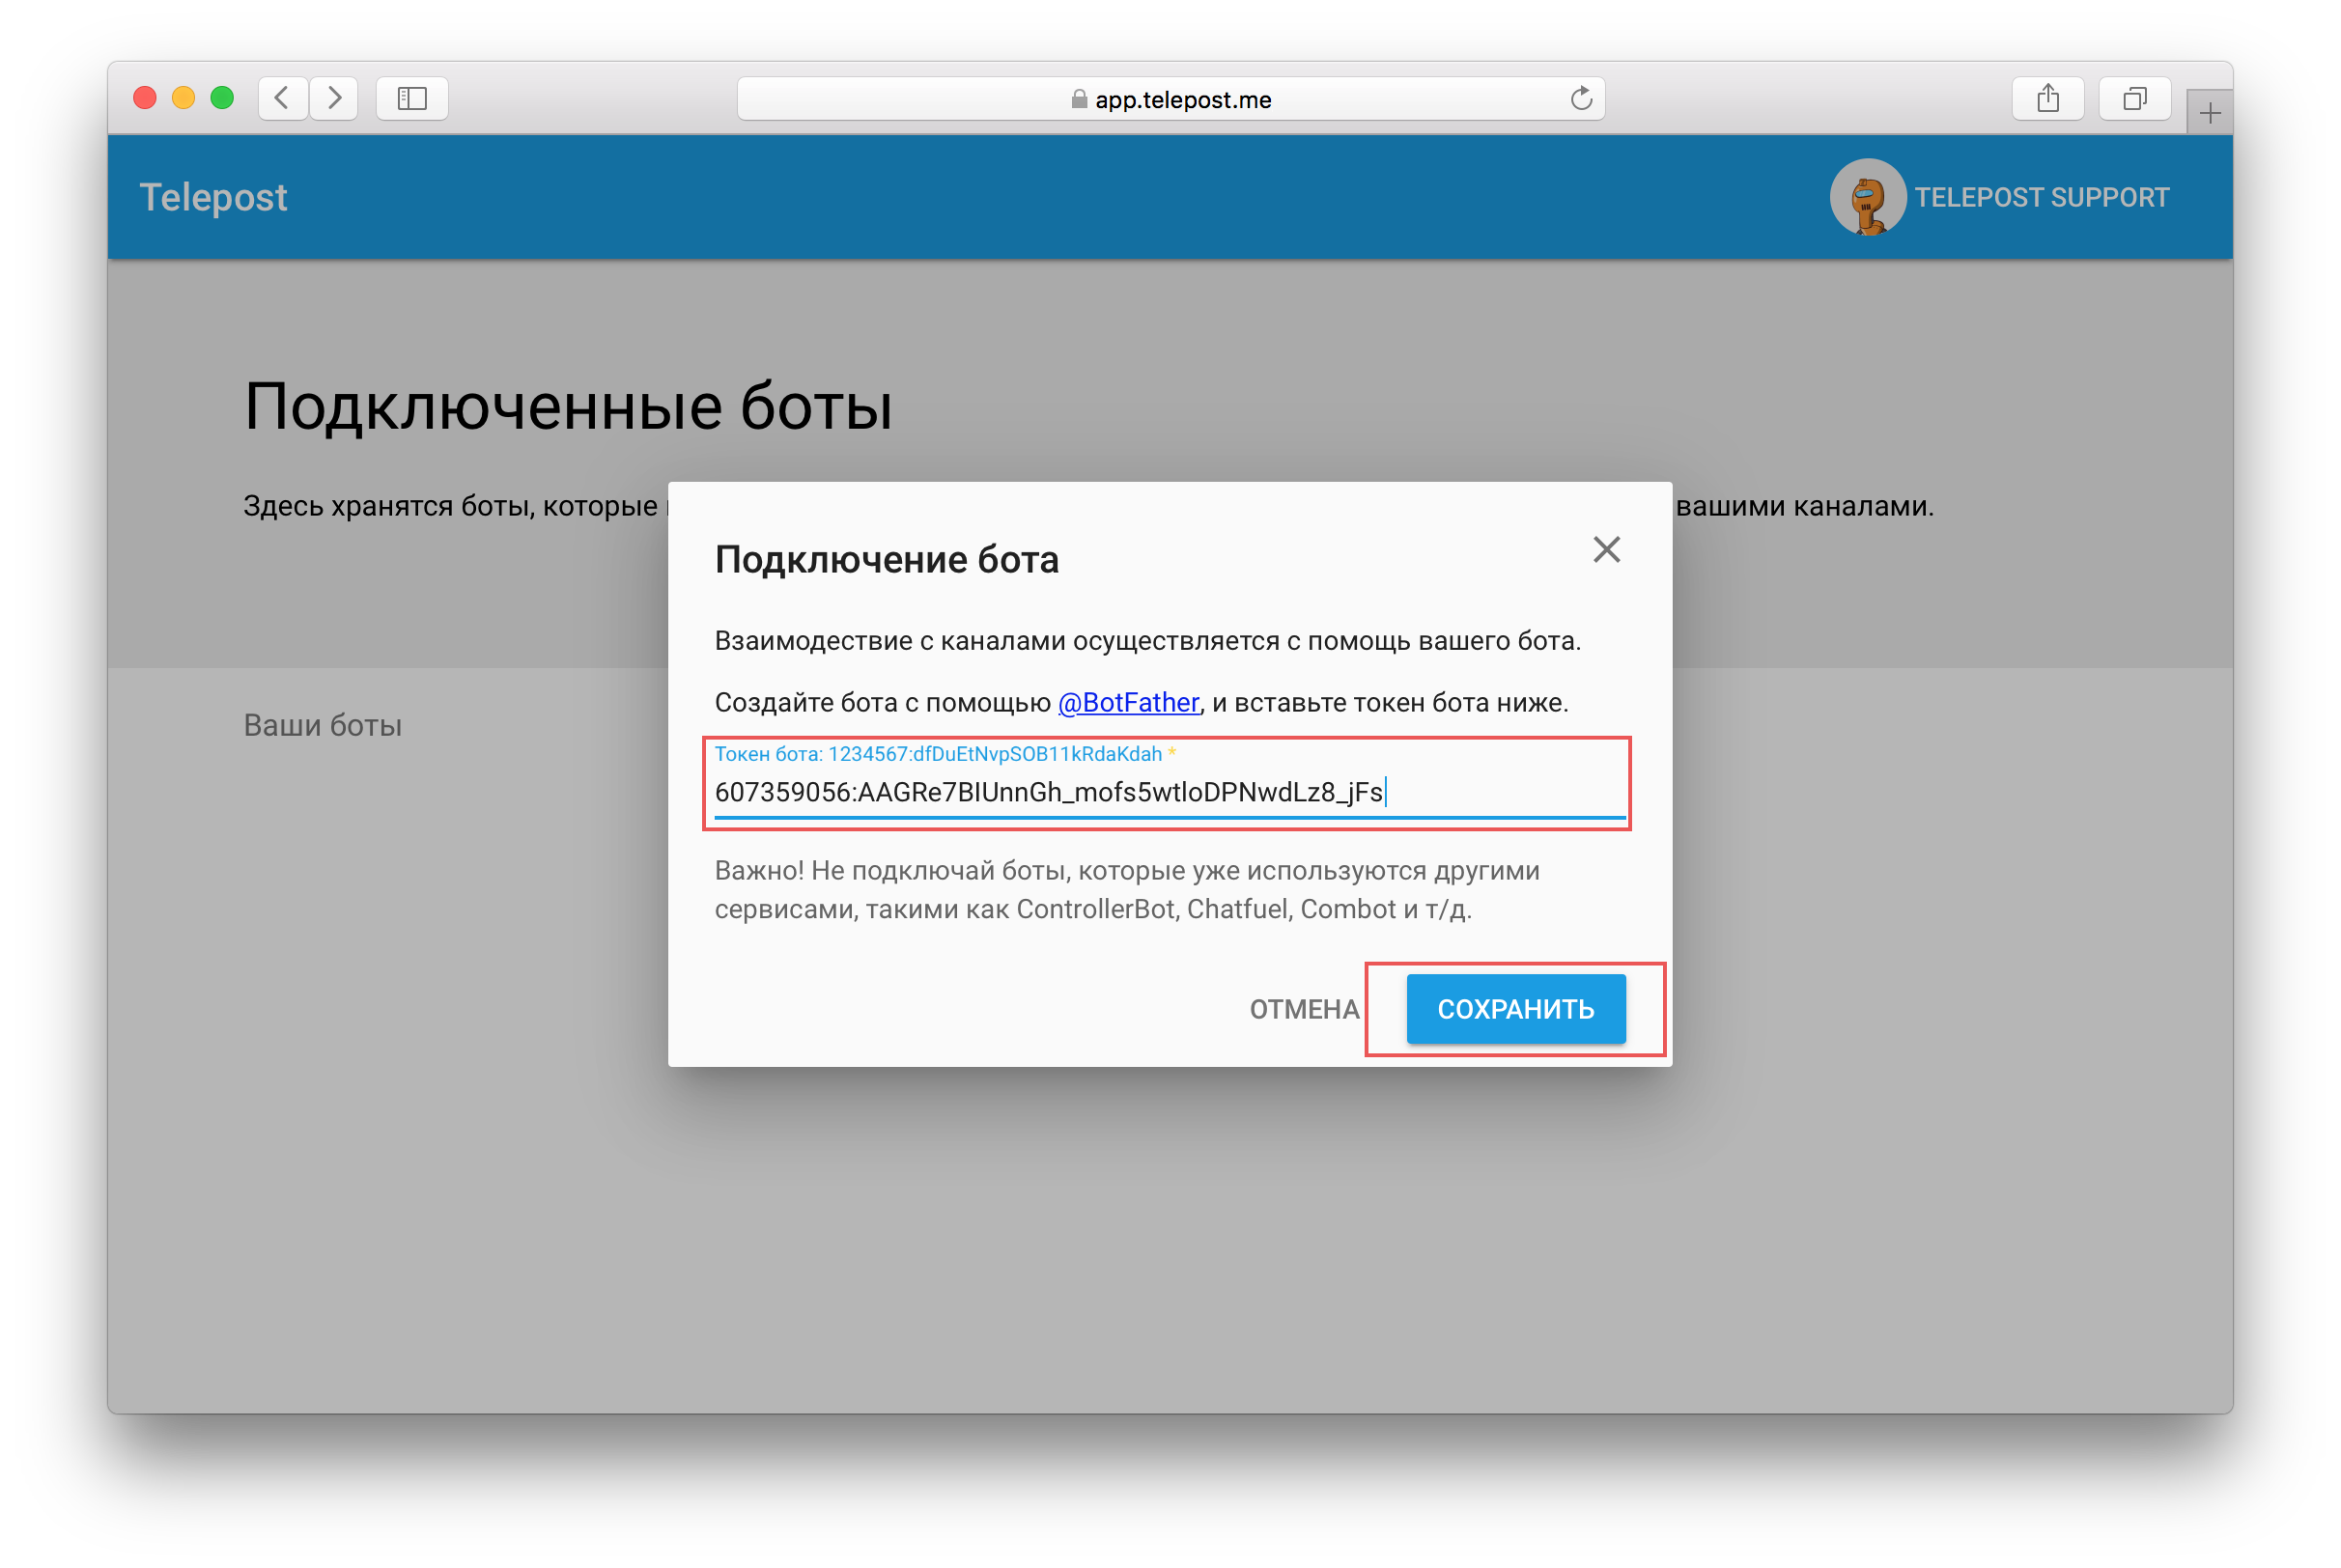 Как установить телеграмм на телефон пошагово на русском языке бесплатно для чайников фото 86